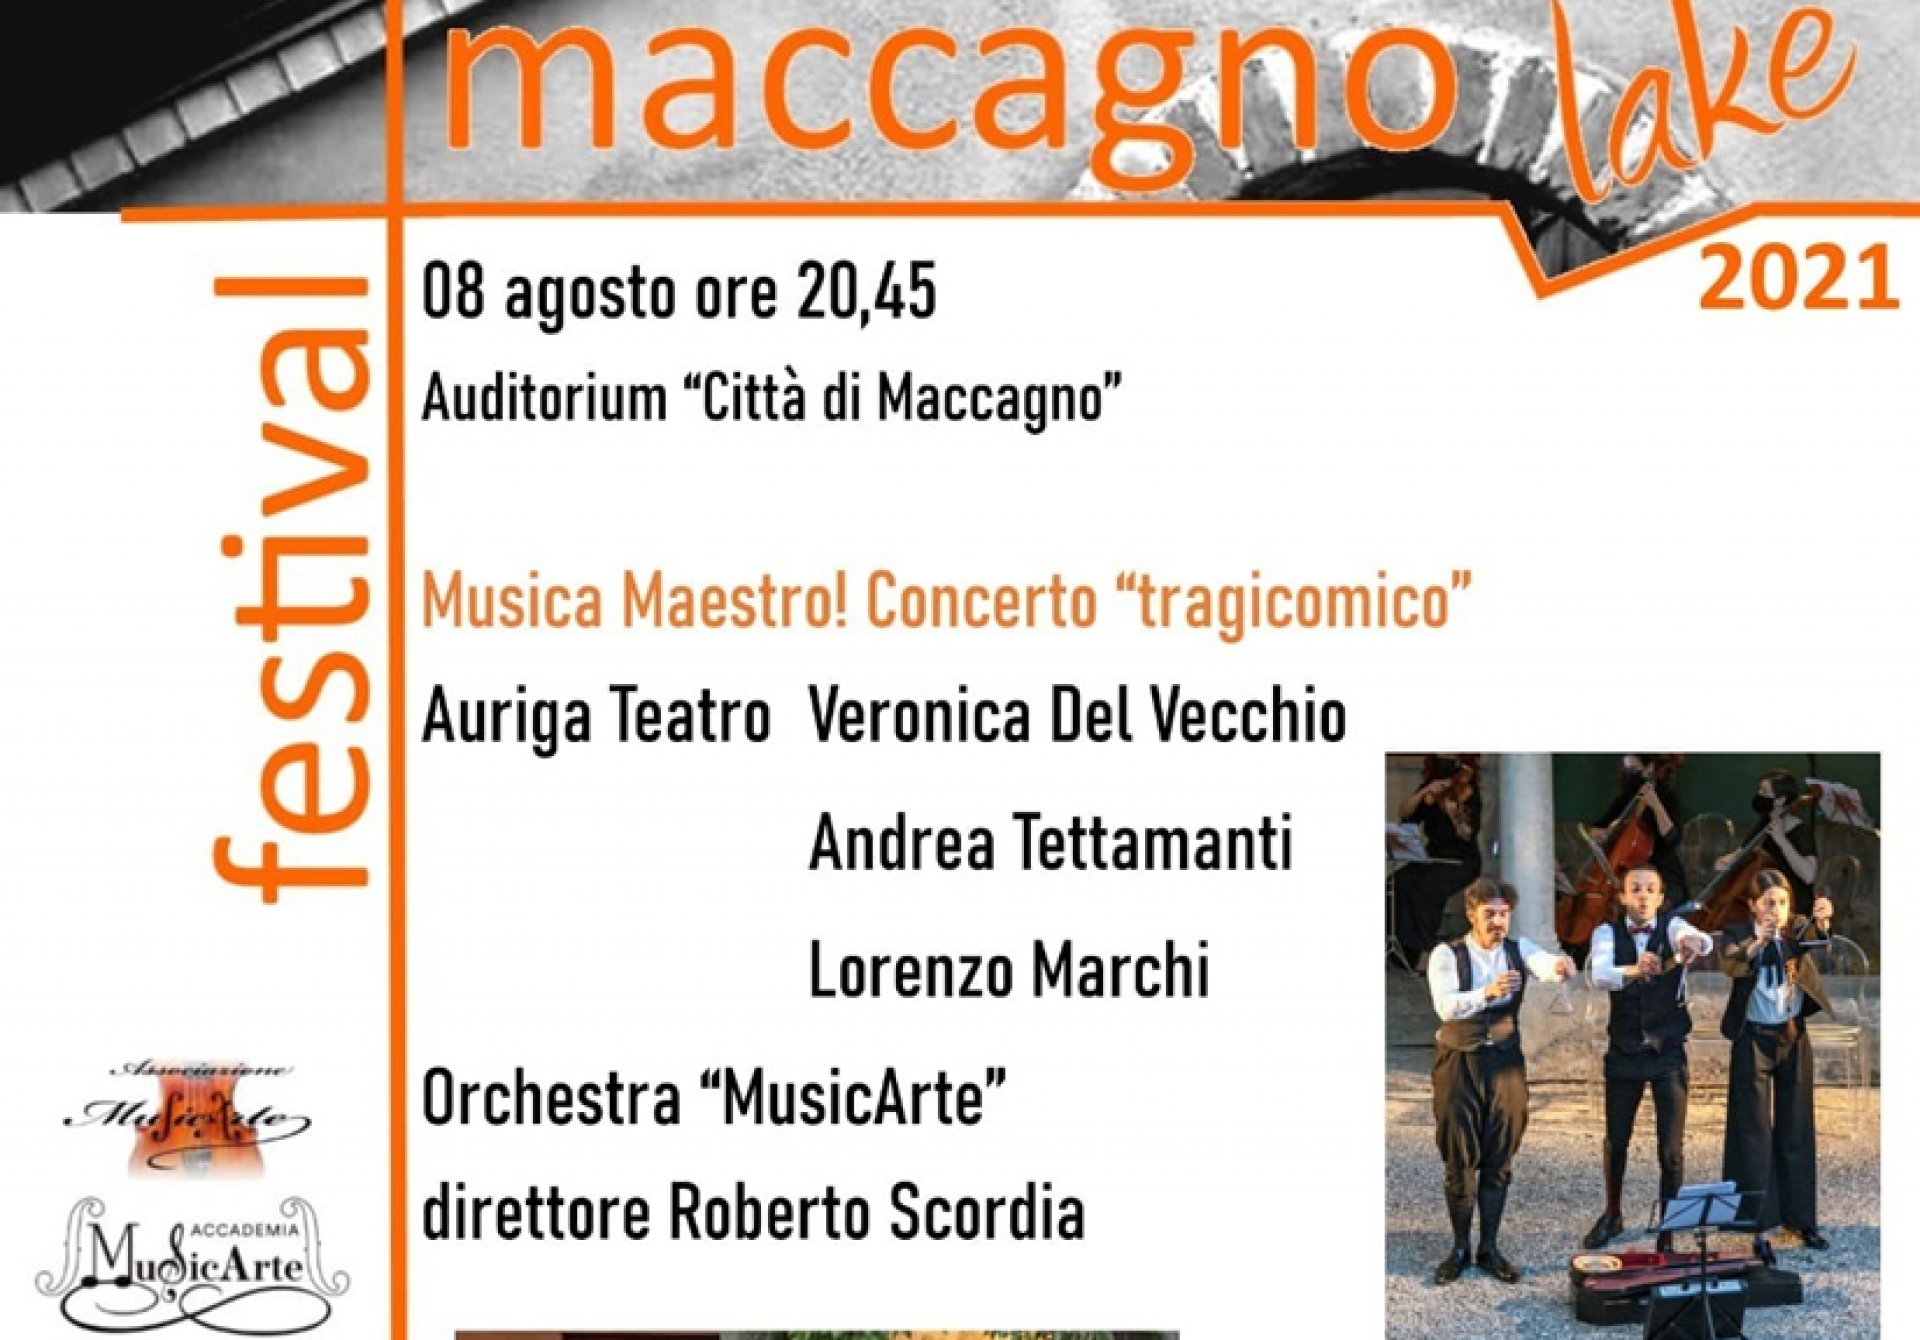 Maccagno Lake Festival - Musica, Maestro! Concerto tragicomico